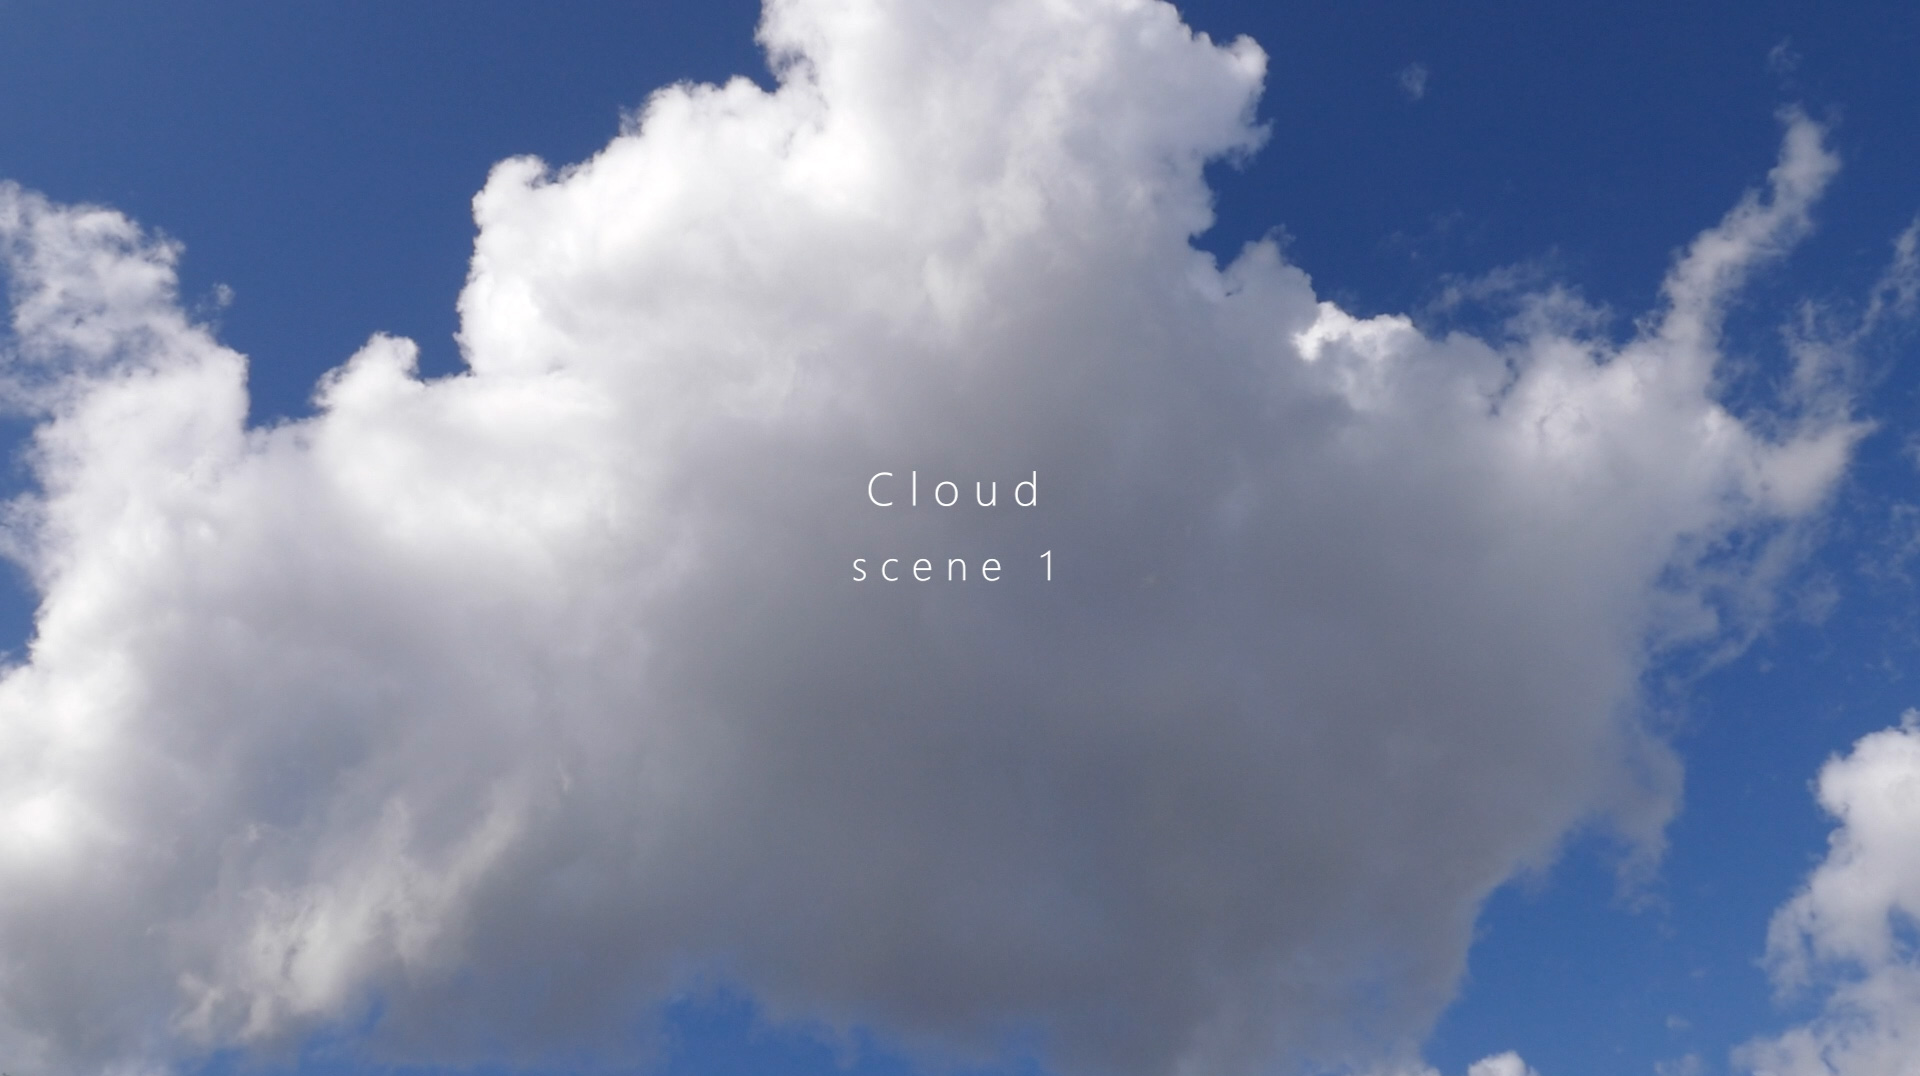 Cloud-scene01